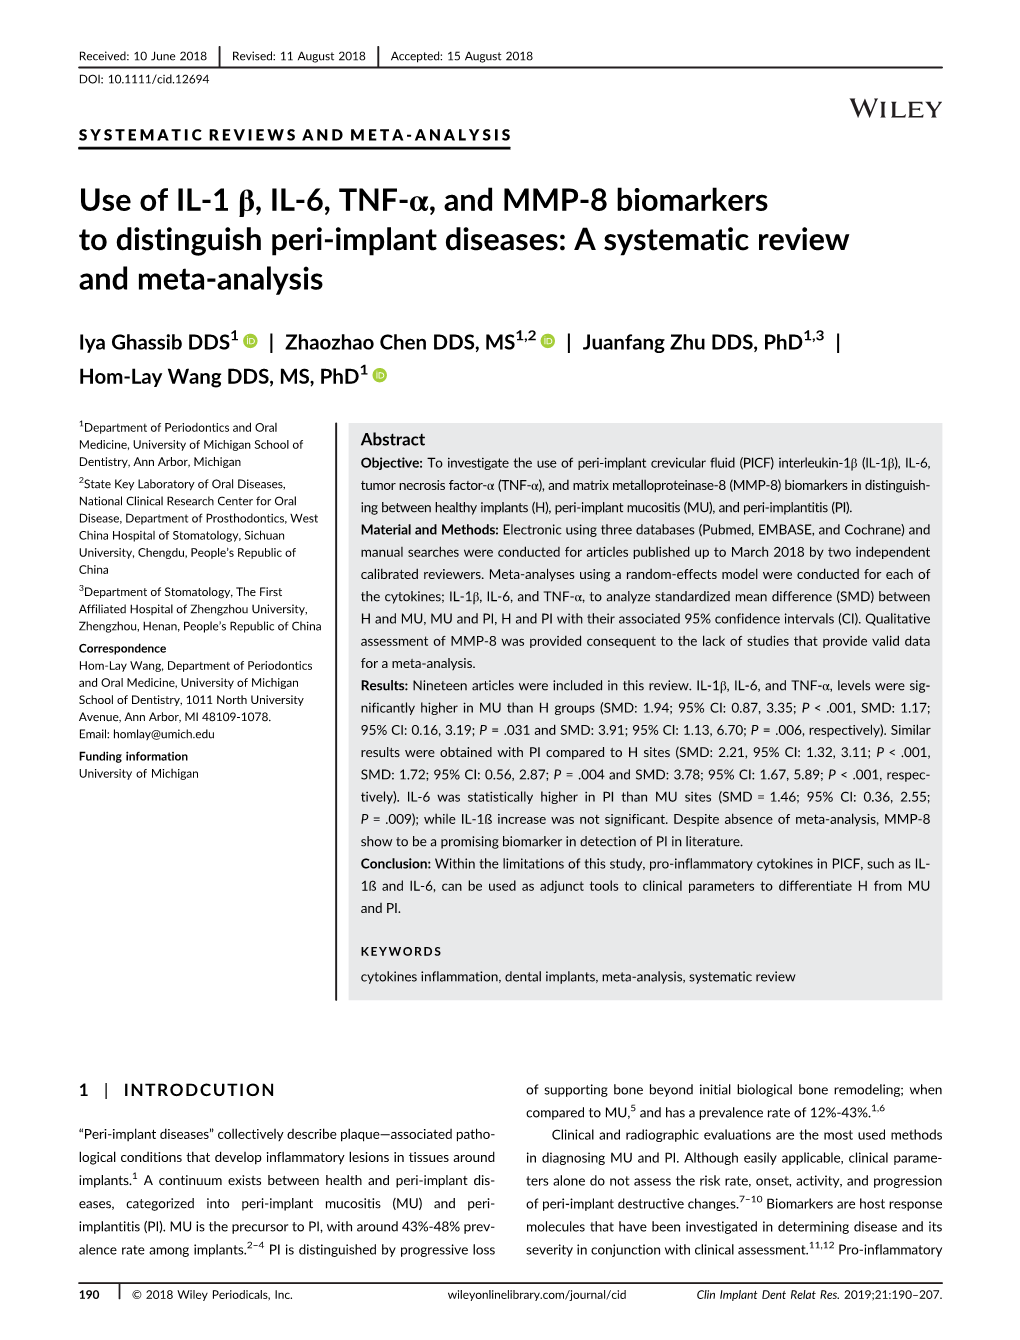 Use of IL-1 Β, IL-6, TNF-Α and MMP-8 Biomarkers to Distinguish Peri-Implant Diseases